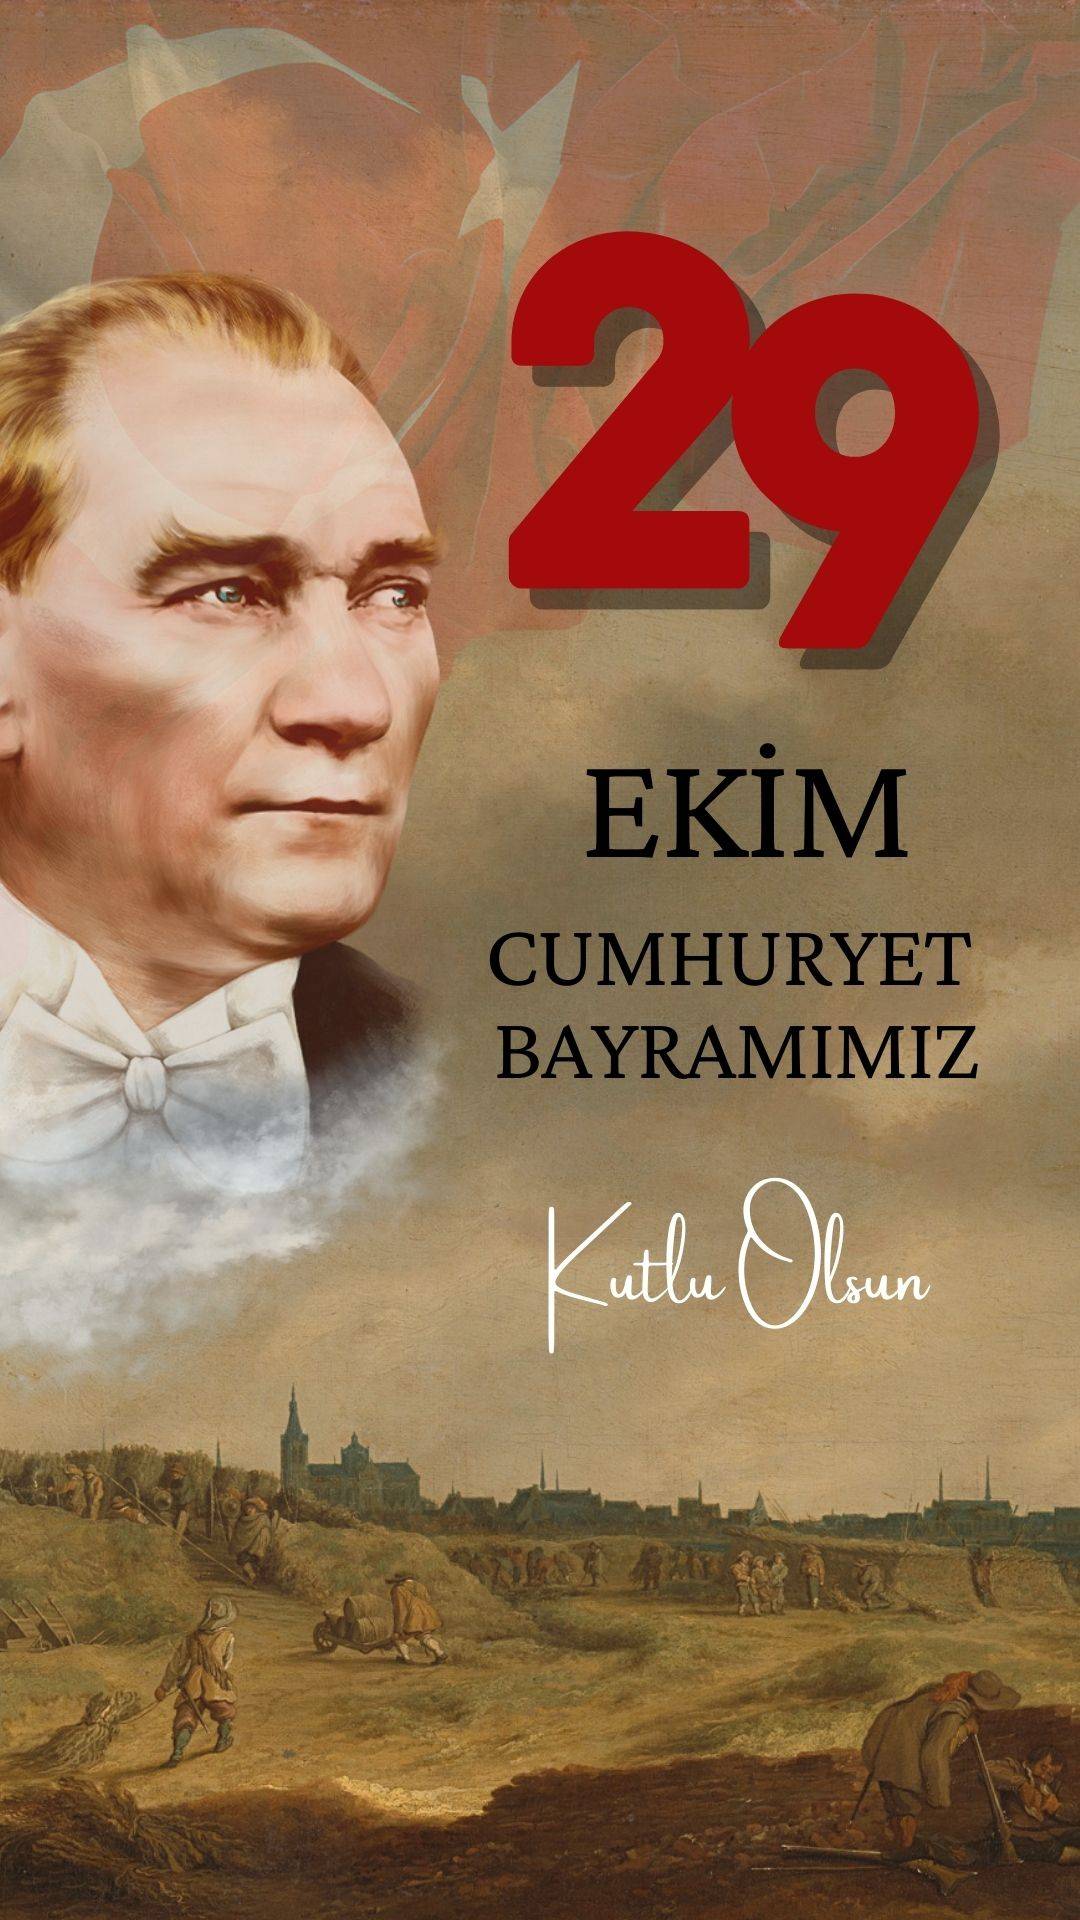 29-ekim-cumhuriyet-bayrami-mesajlari-1.jpg